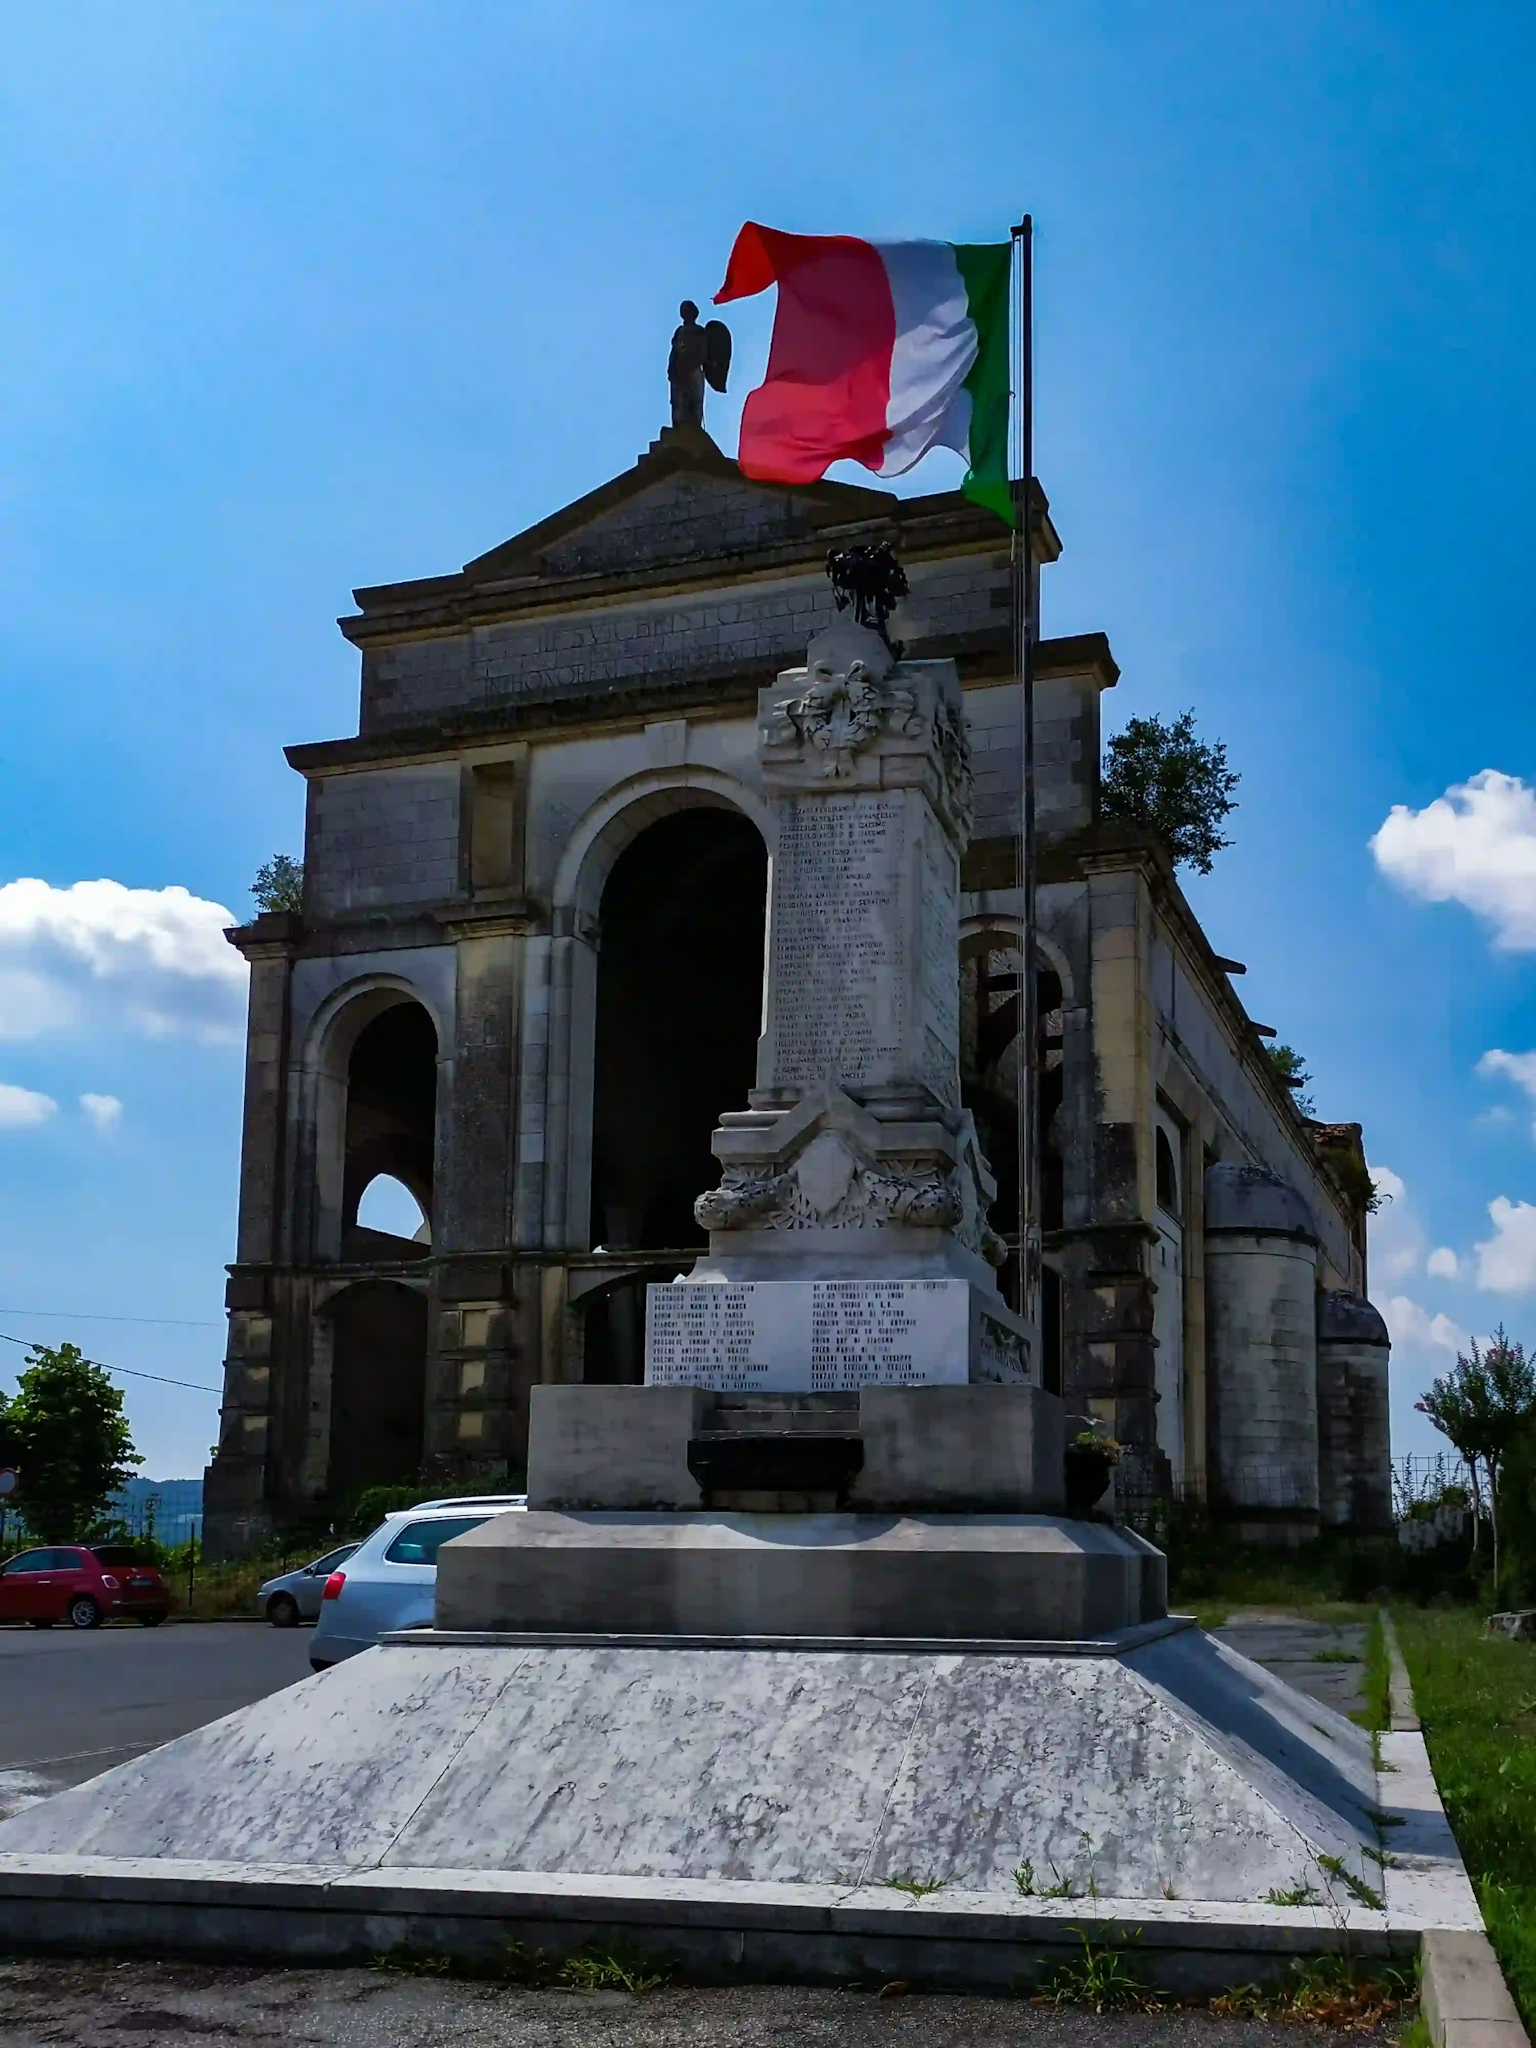 Chiesa incompiuta sullo sfondo, in primo piano monumento ai caduti con bandiera italiana